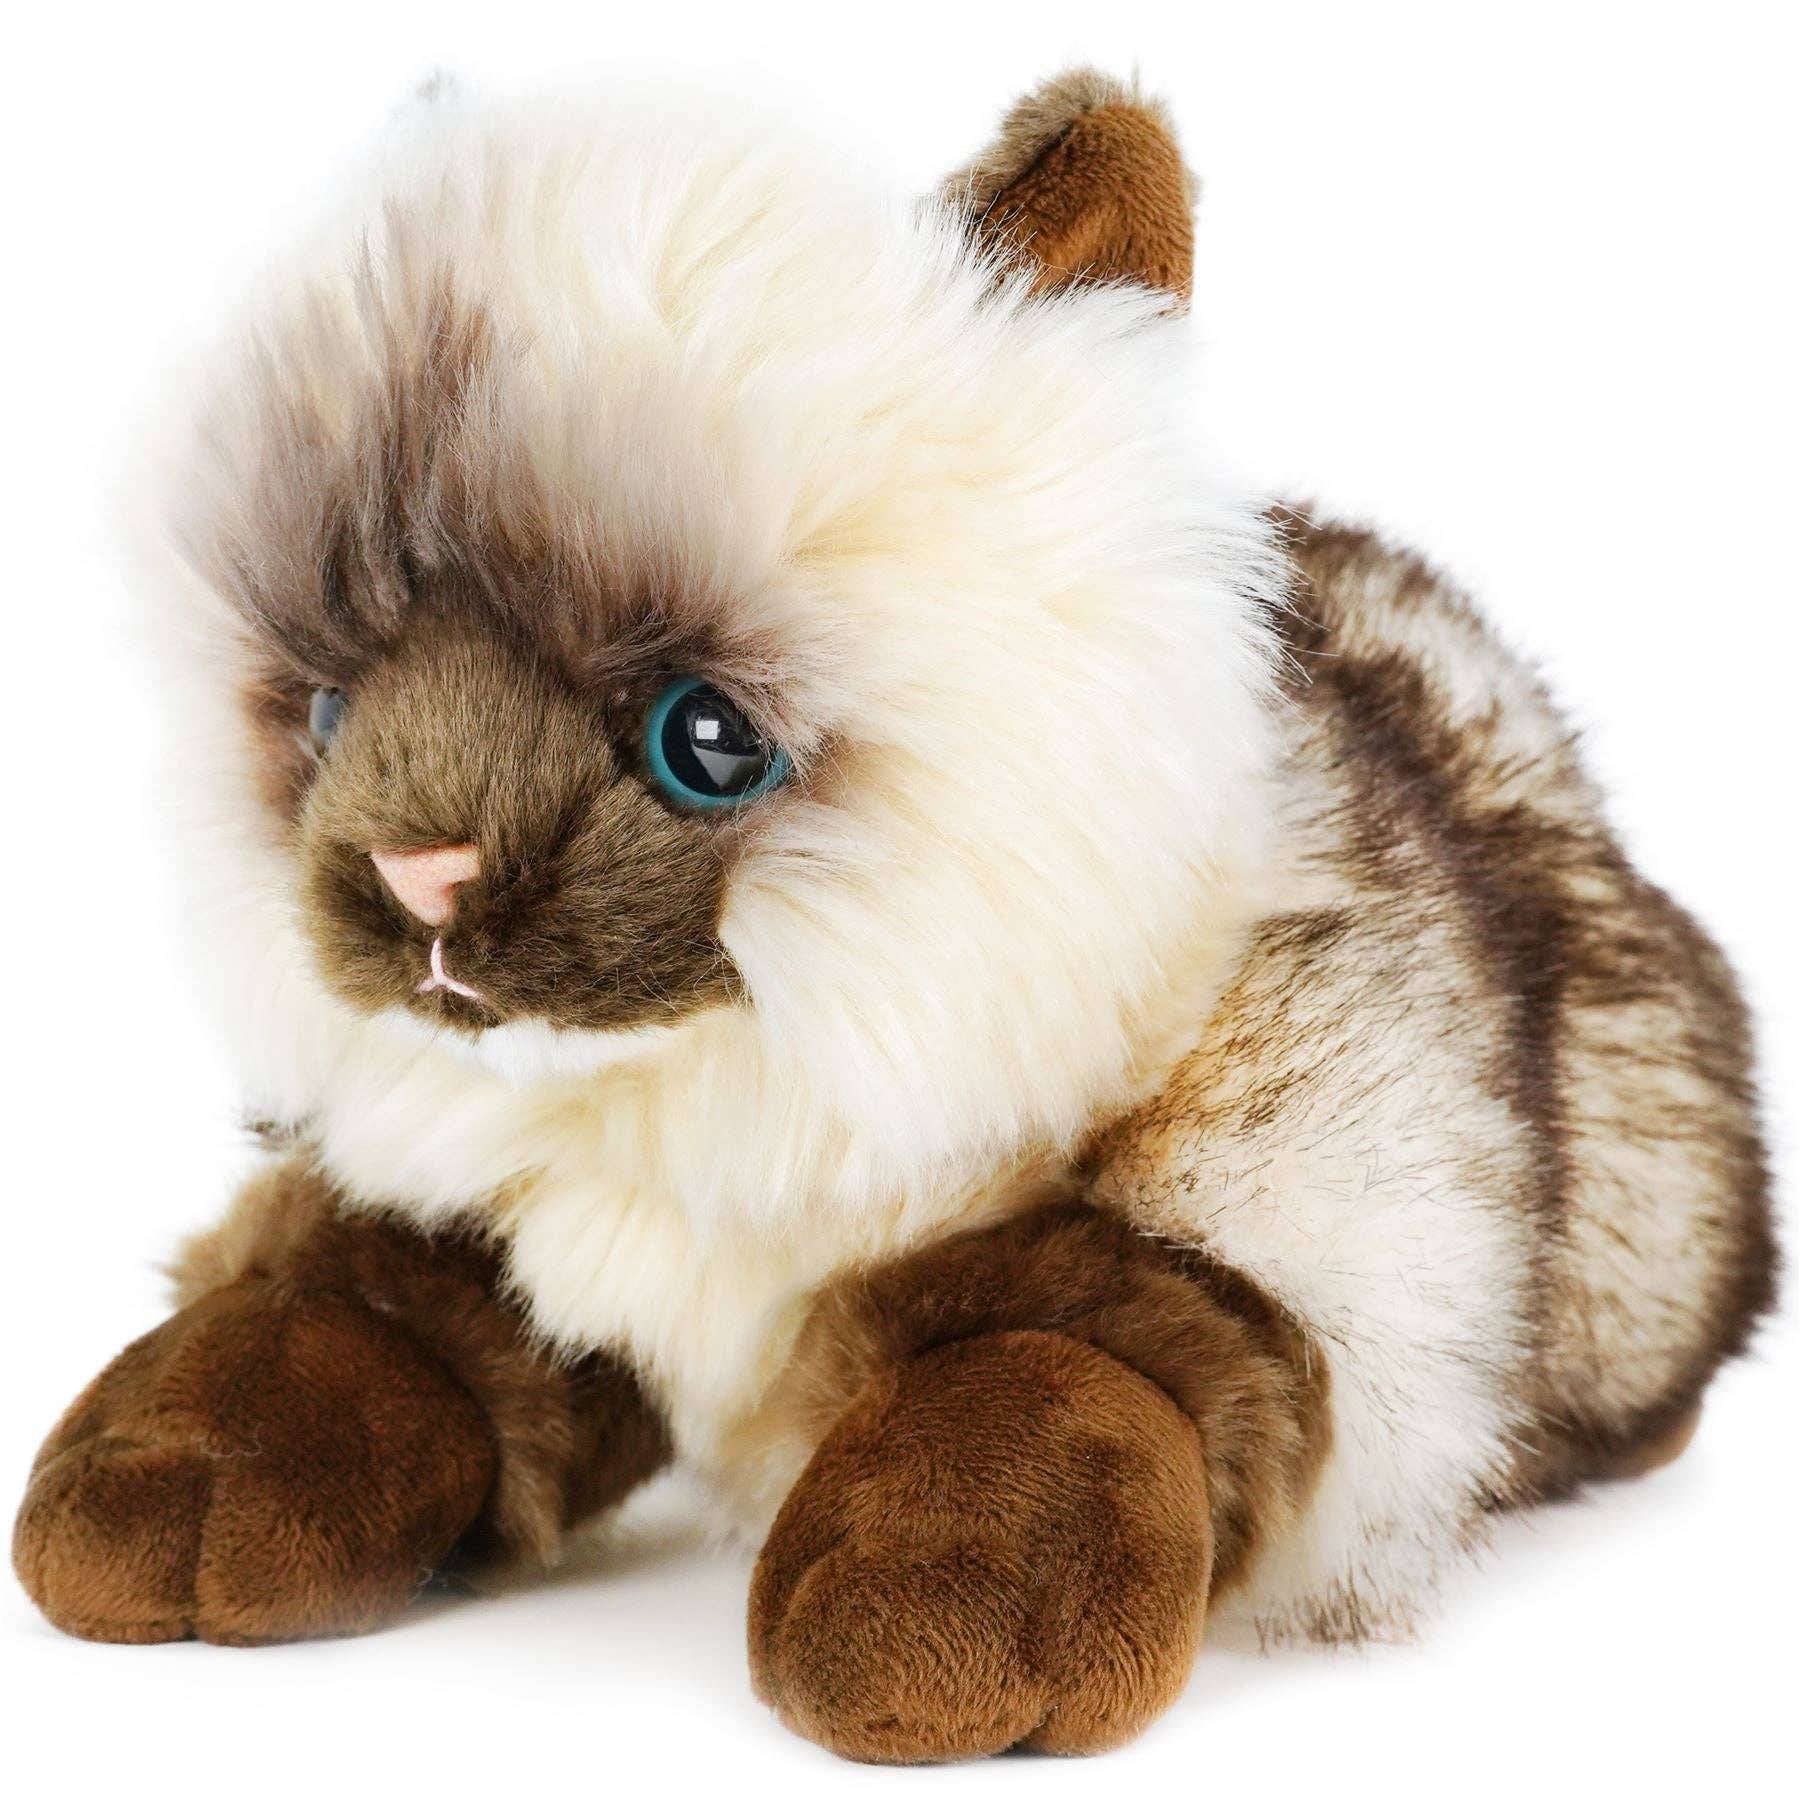 Snowy the Ragdoll Cat, 12 Inch Stuffed Animal Plush